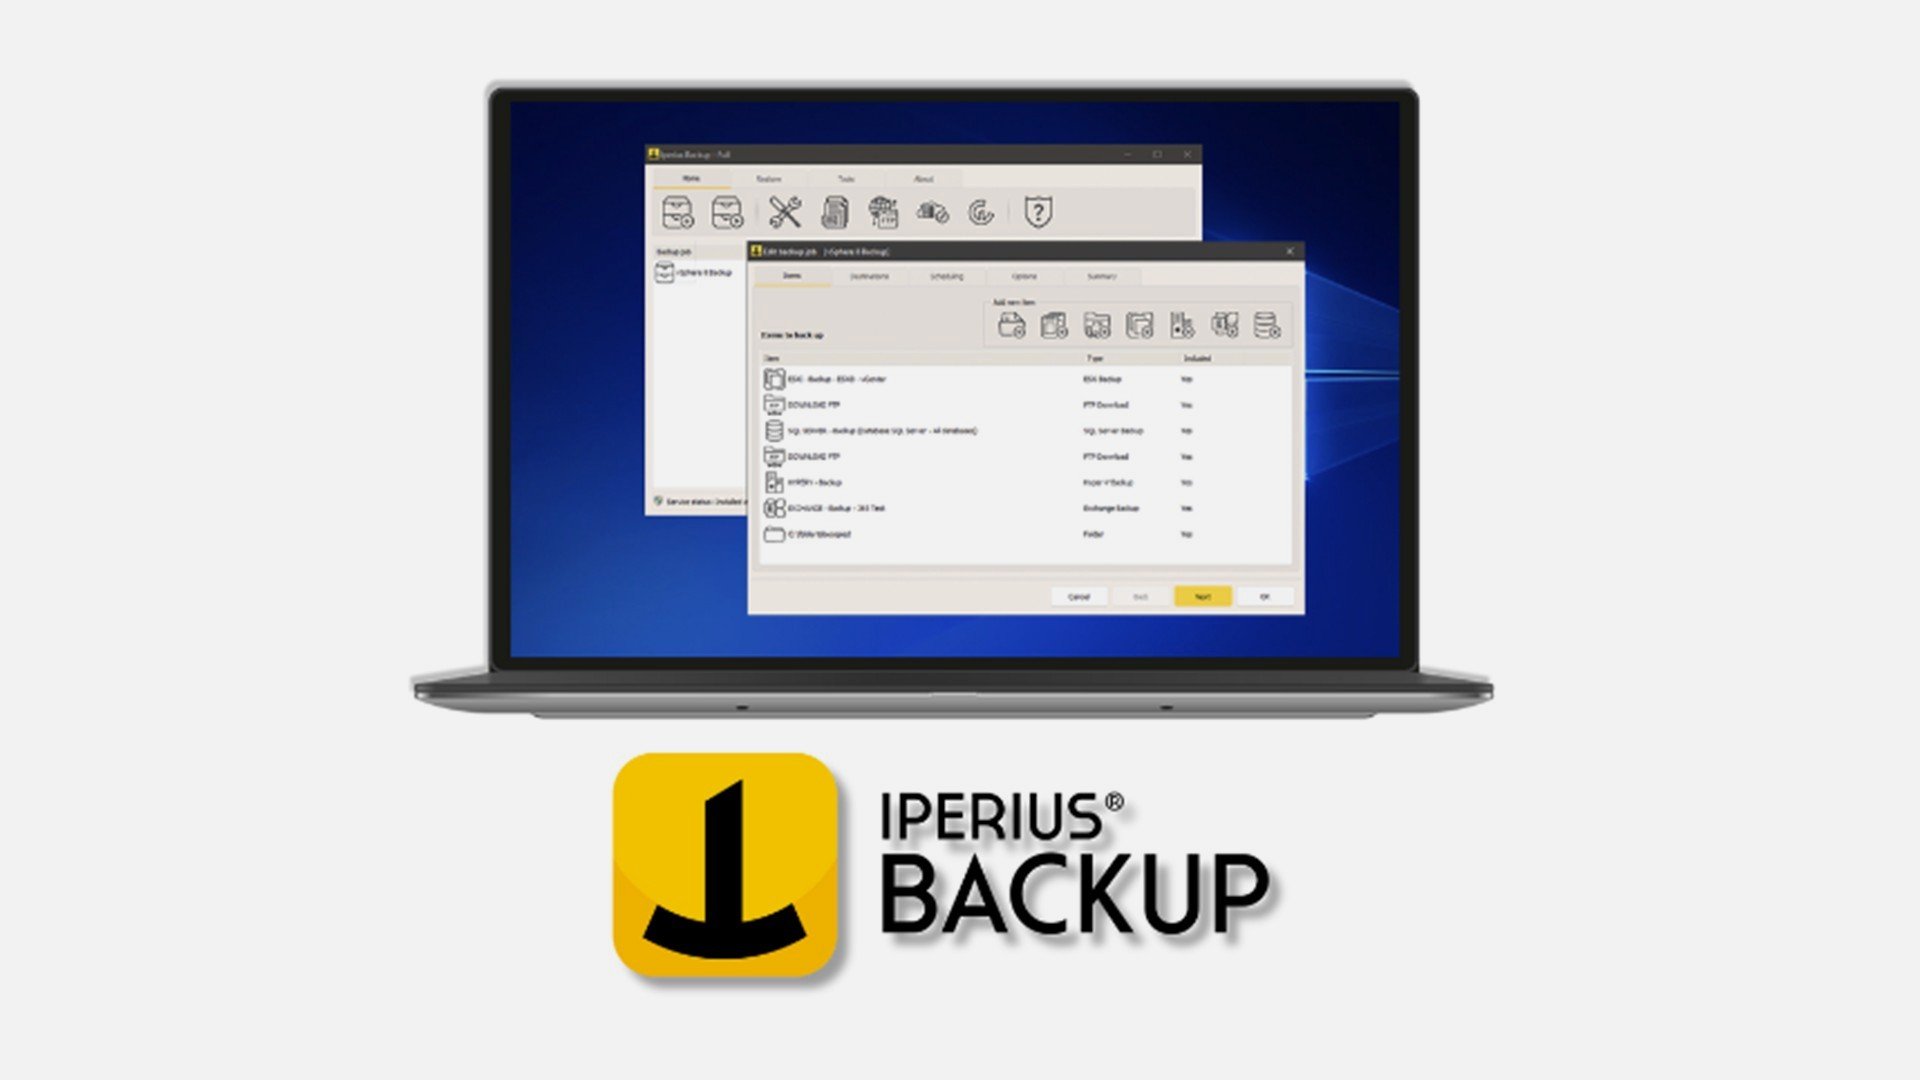 iperius backup 8.0 review